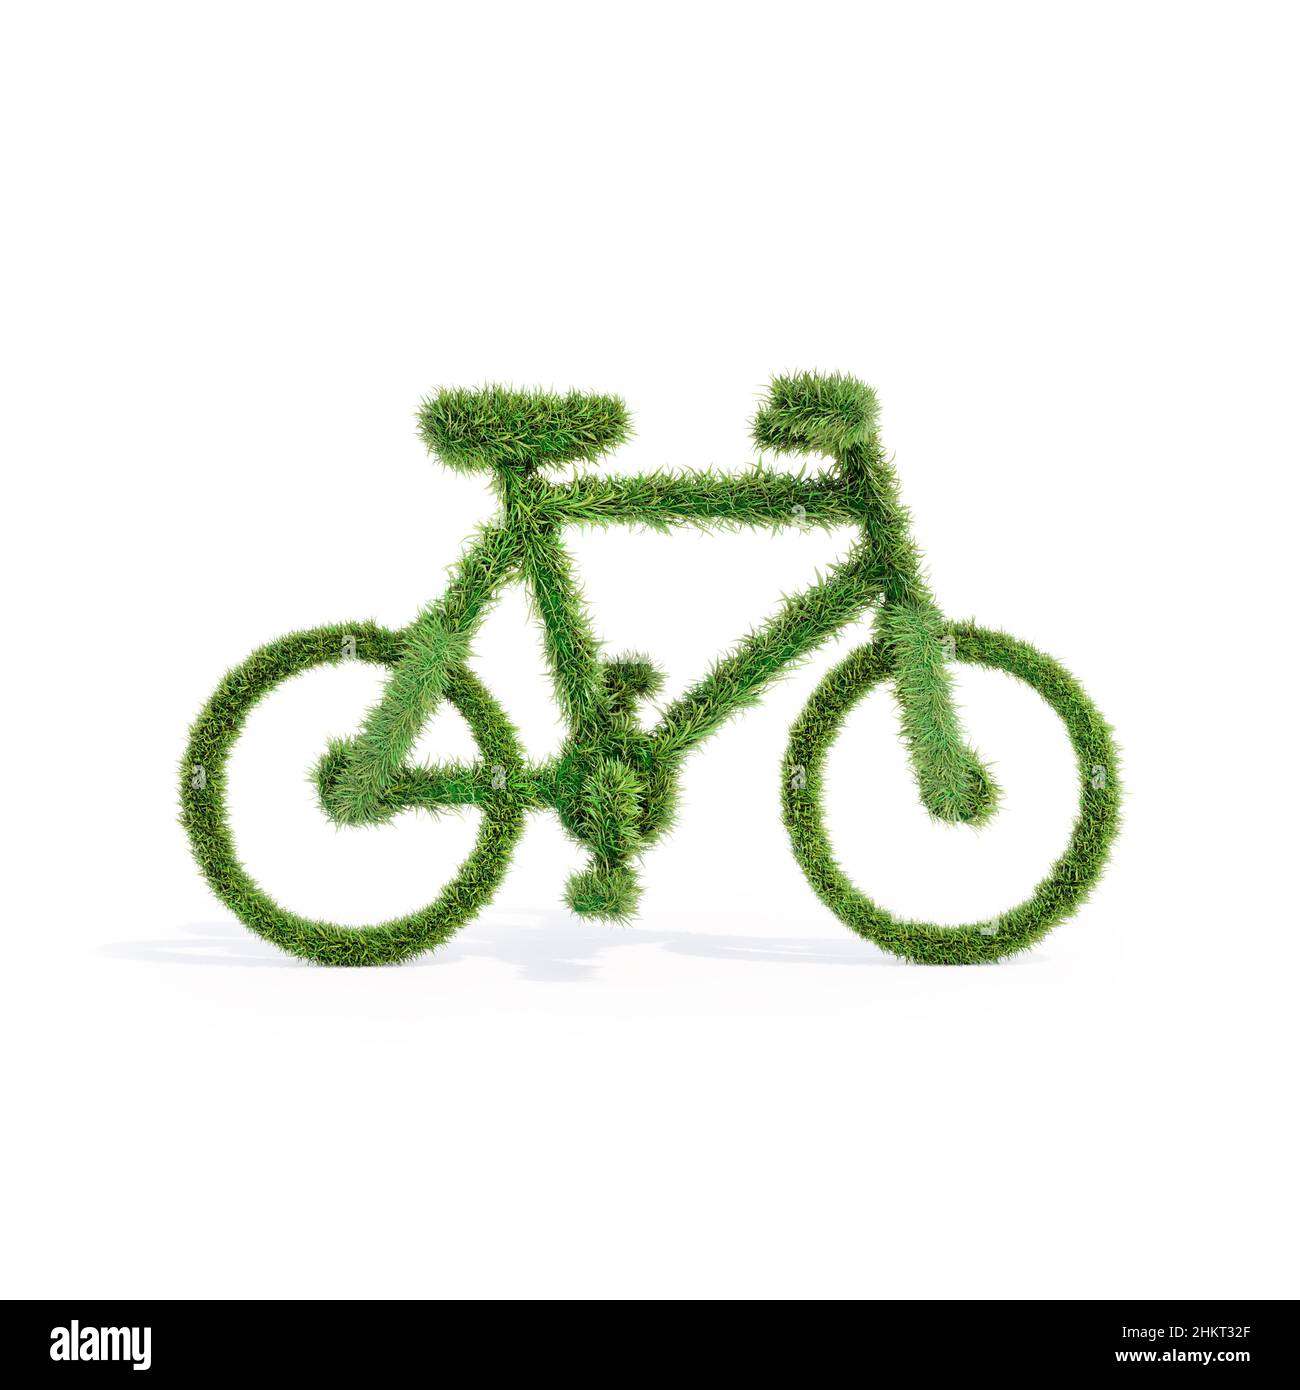 3D rendu de la forme simplifiée de vélo recouverte d'herbe - concept de sensibilisation à l'environnement Banque D'Images